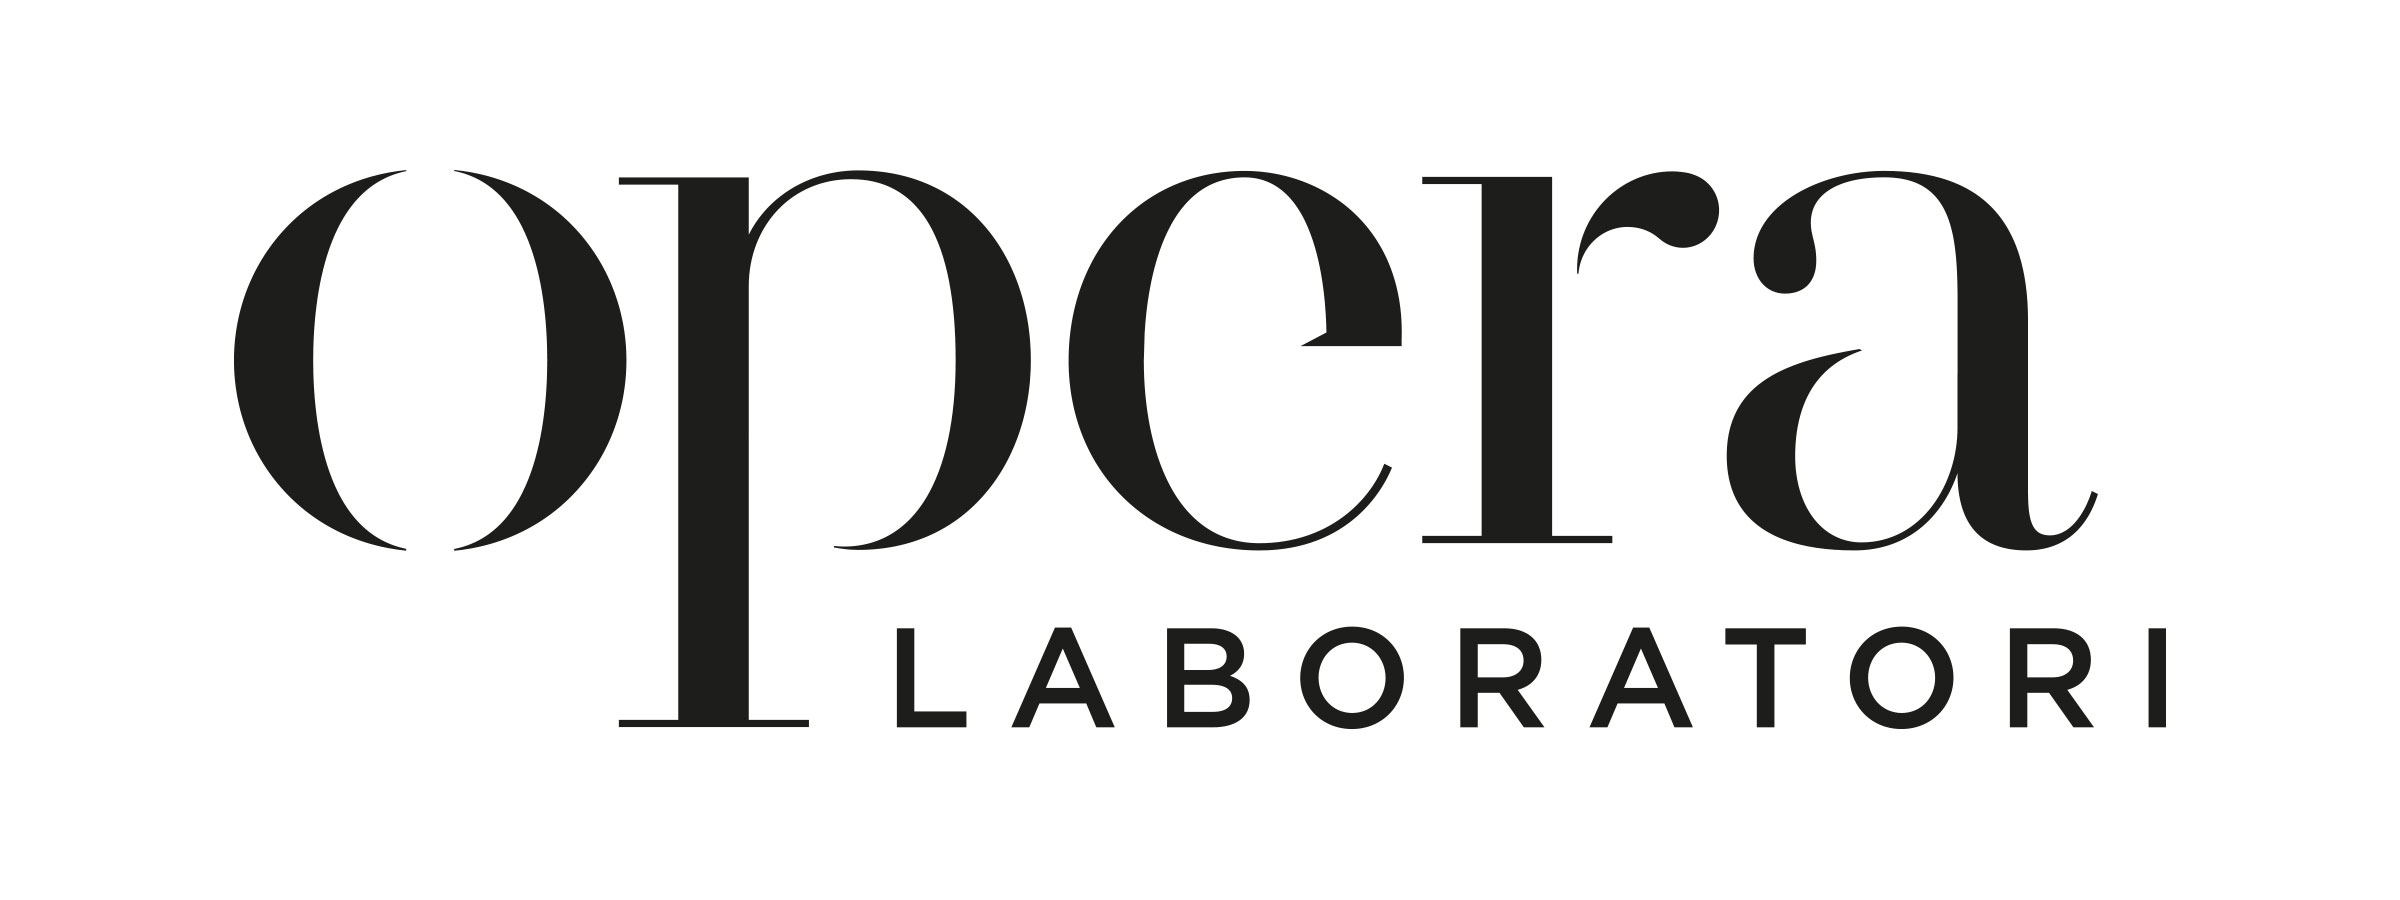 Opera laboratori fiorentini S.p.a.